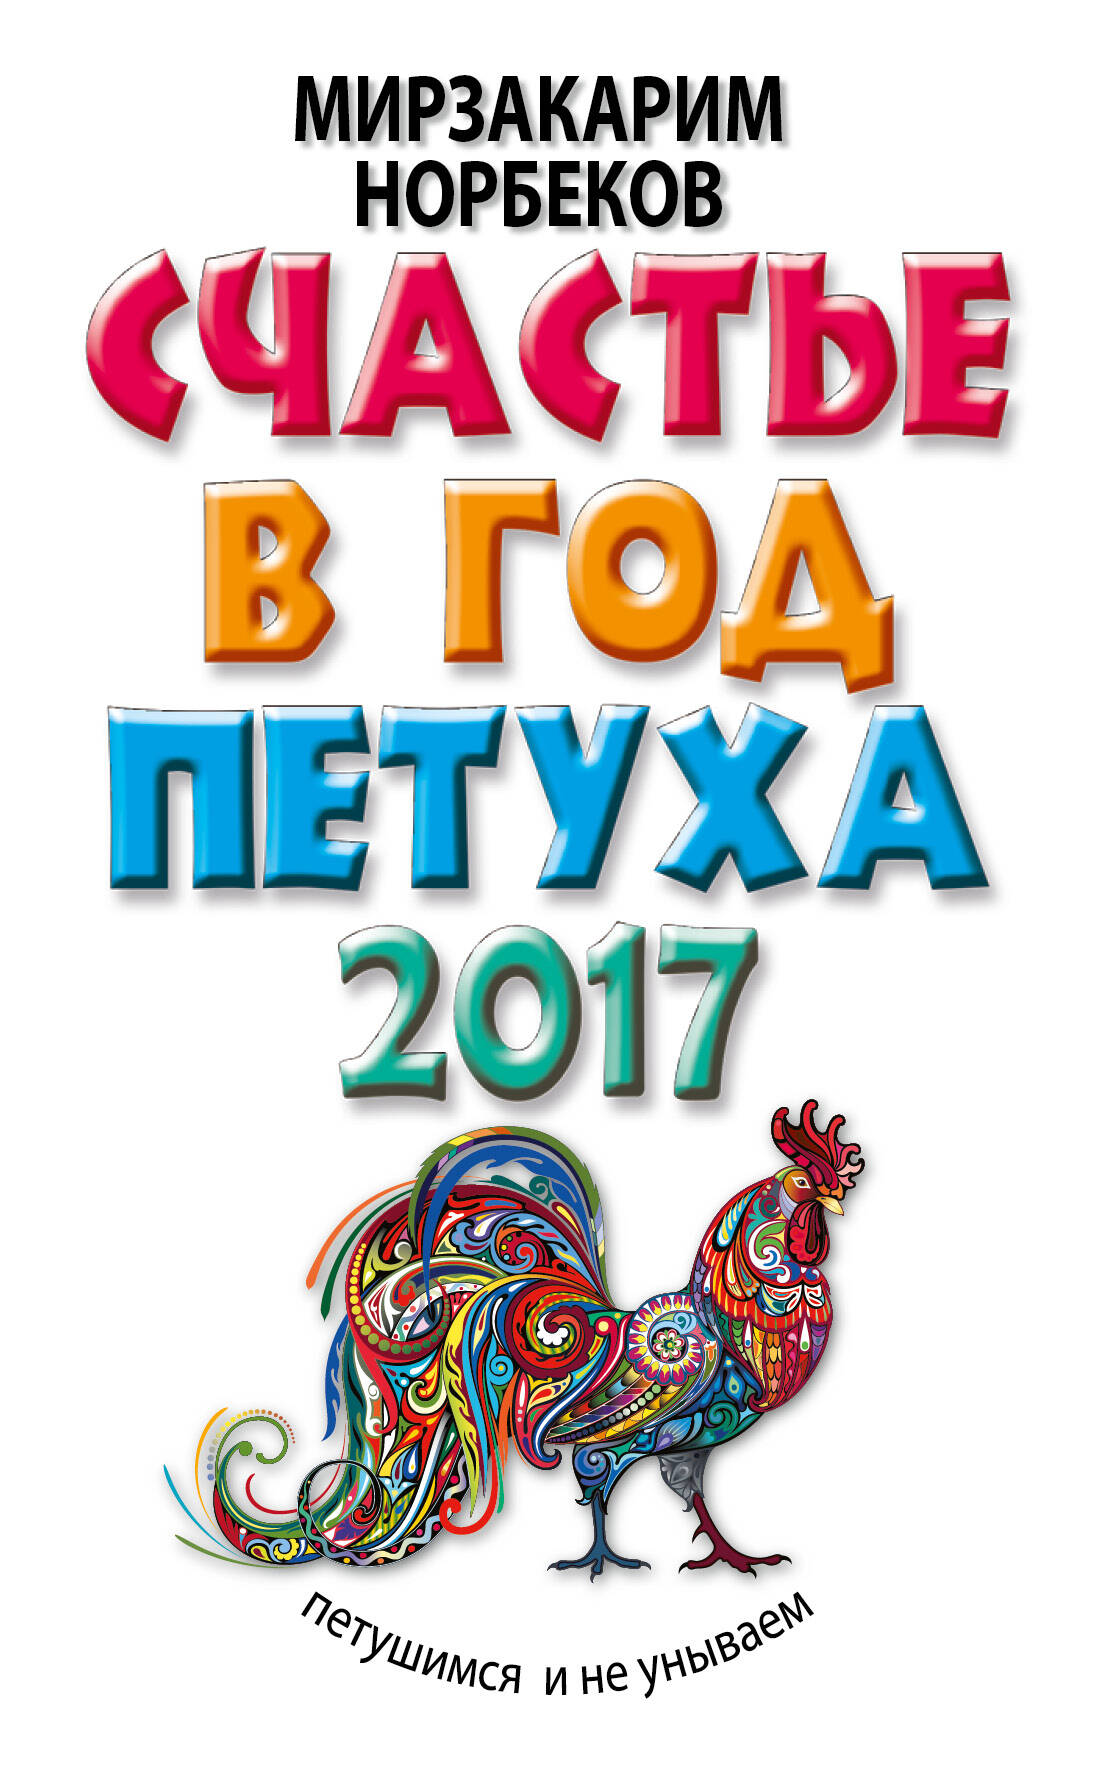 Норбеков Мирзакарим Санакулович Счастье в год Петуха: петушимся и не унываем в 2017 году - страница 0